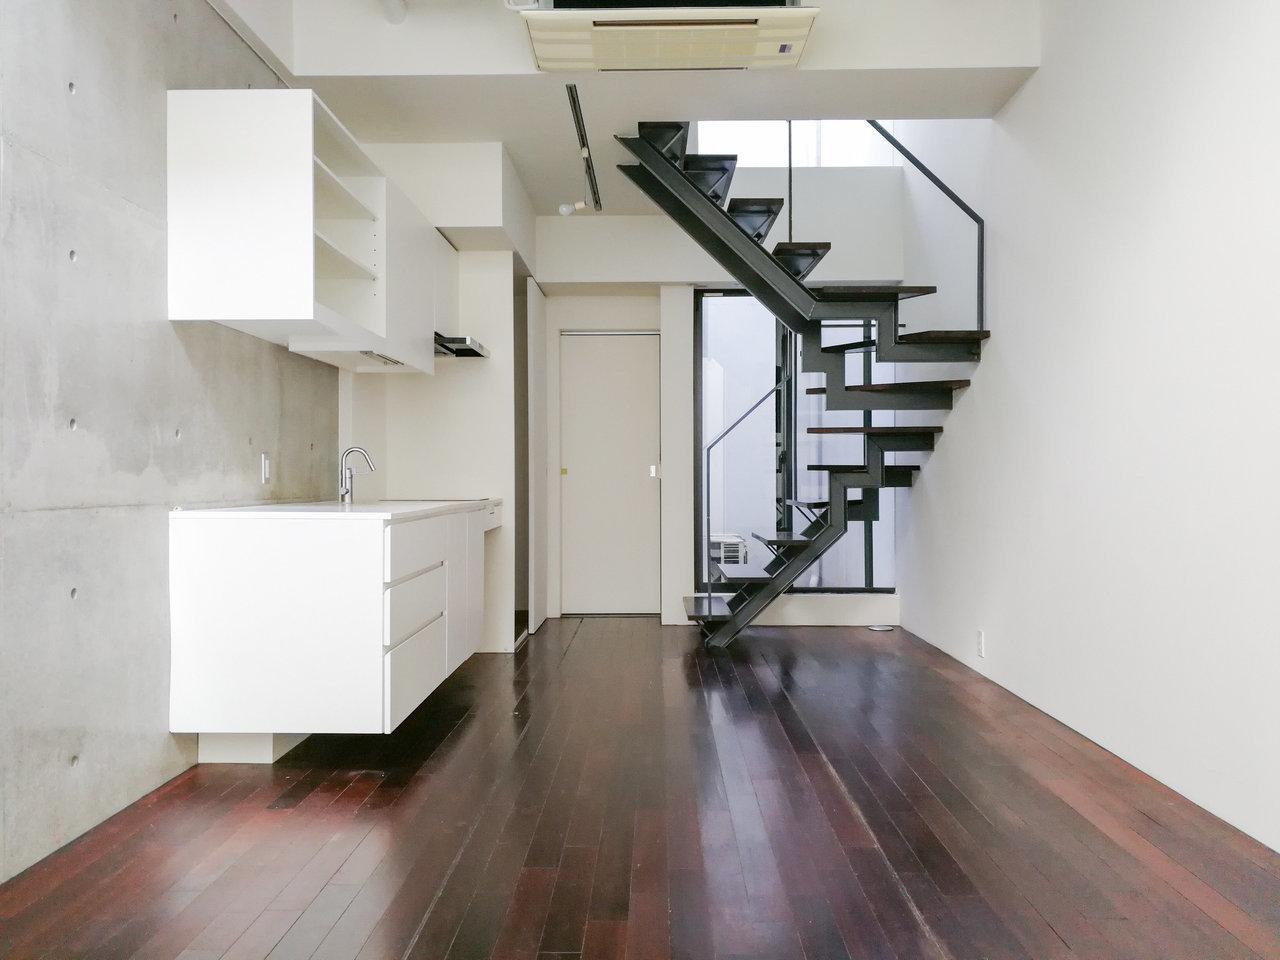 視界の抜け感も楽しめるシックな階段。真っ白なキッチンとのコントラストが美しい……。